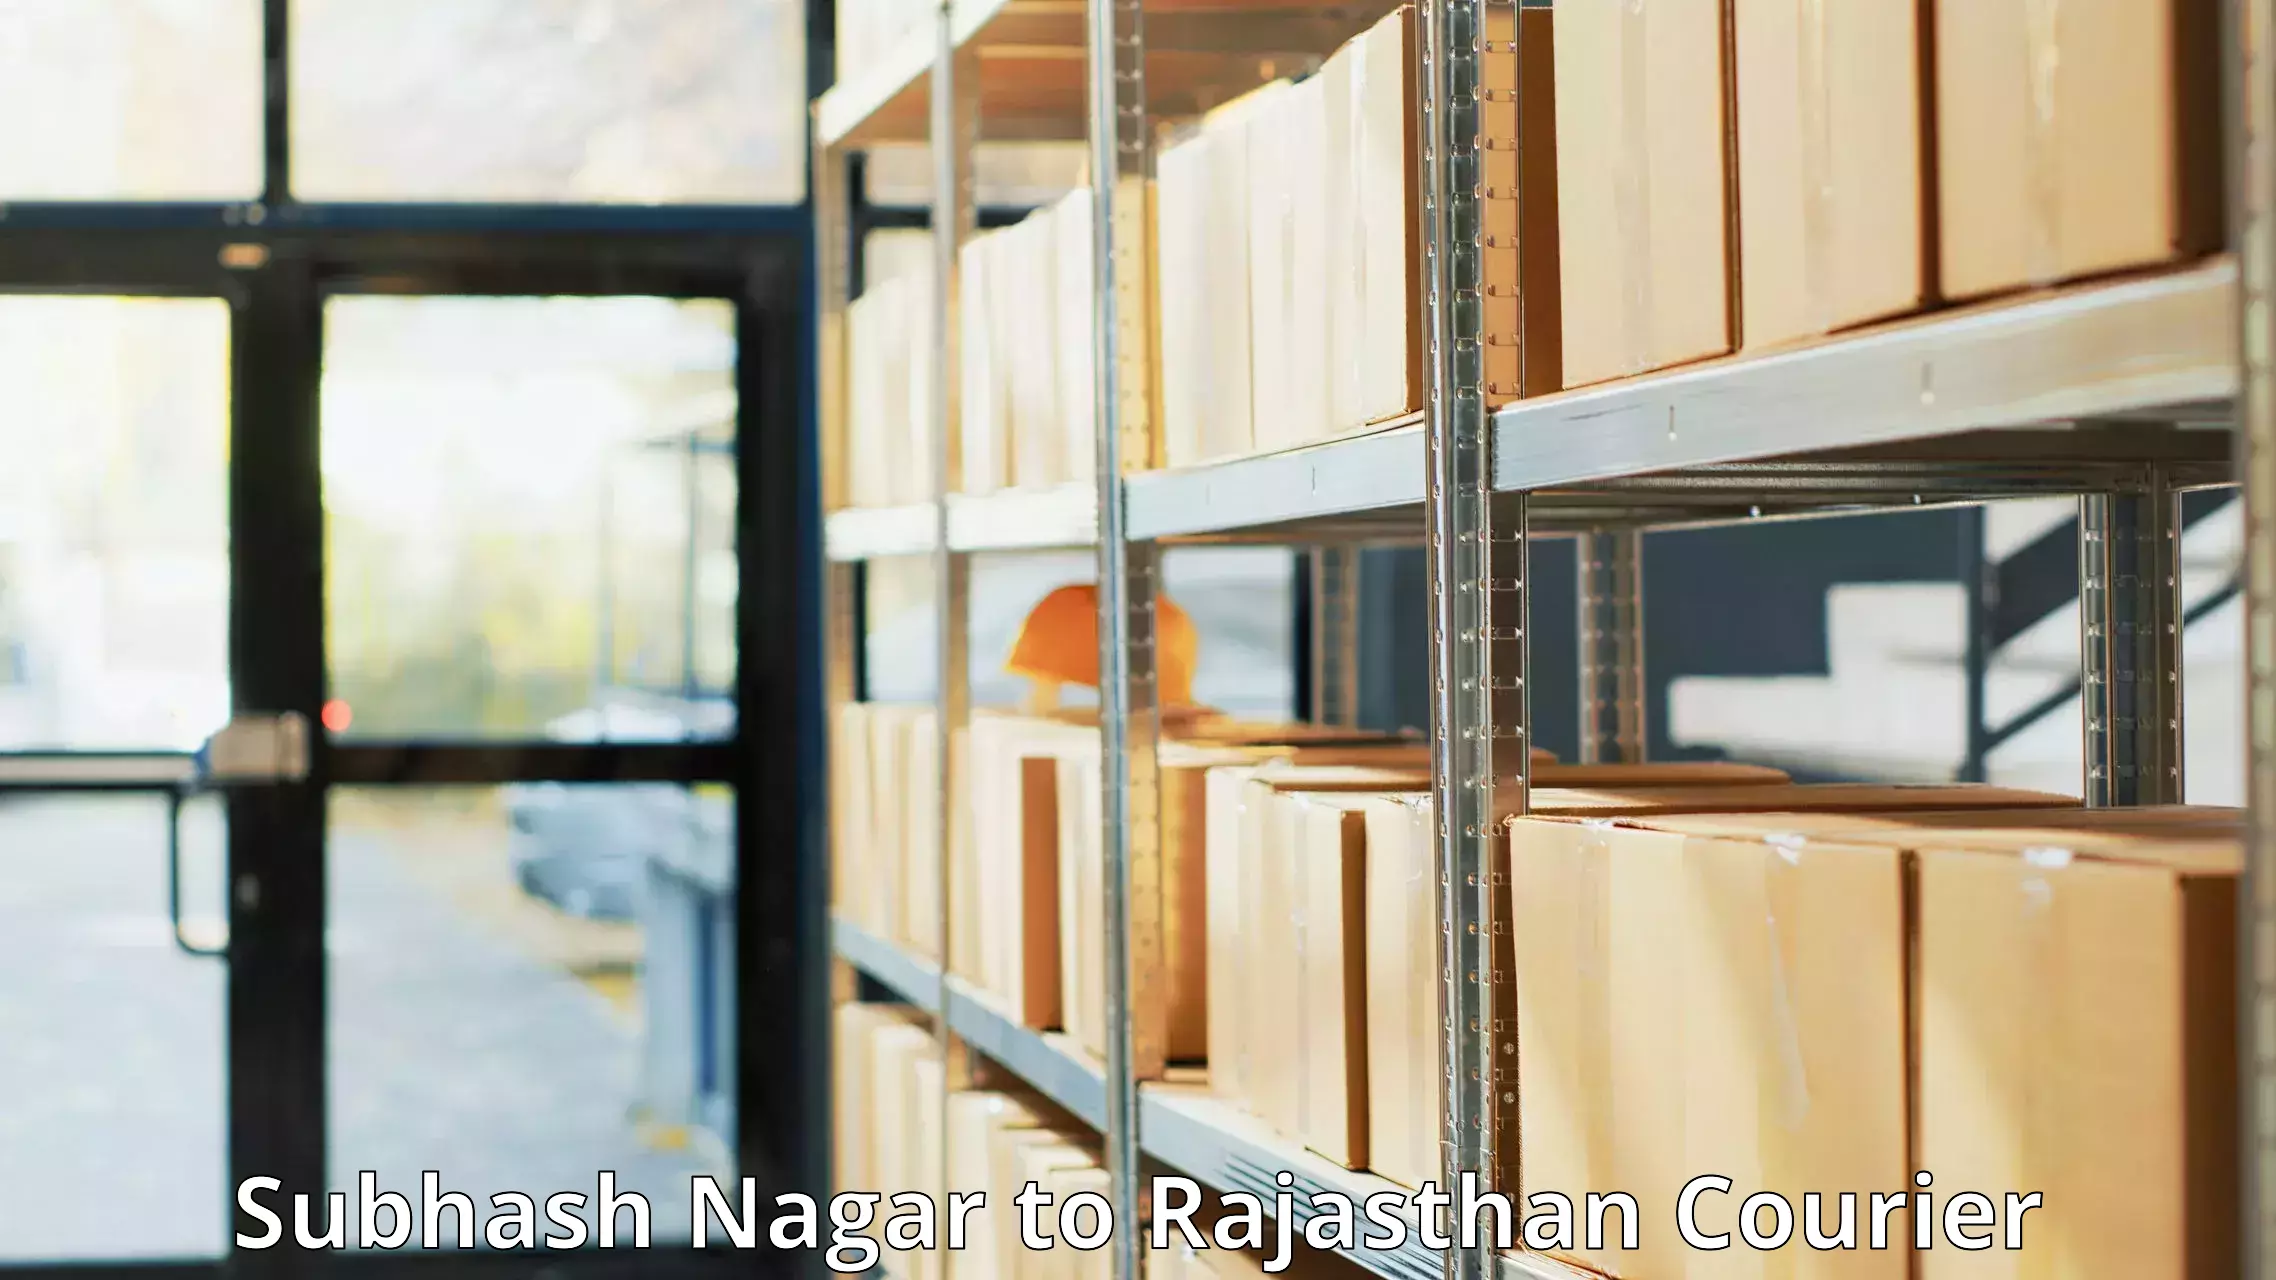 User-friendly courier app Subhash Nagar to Khetri Nagar